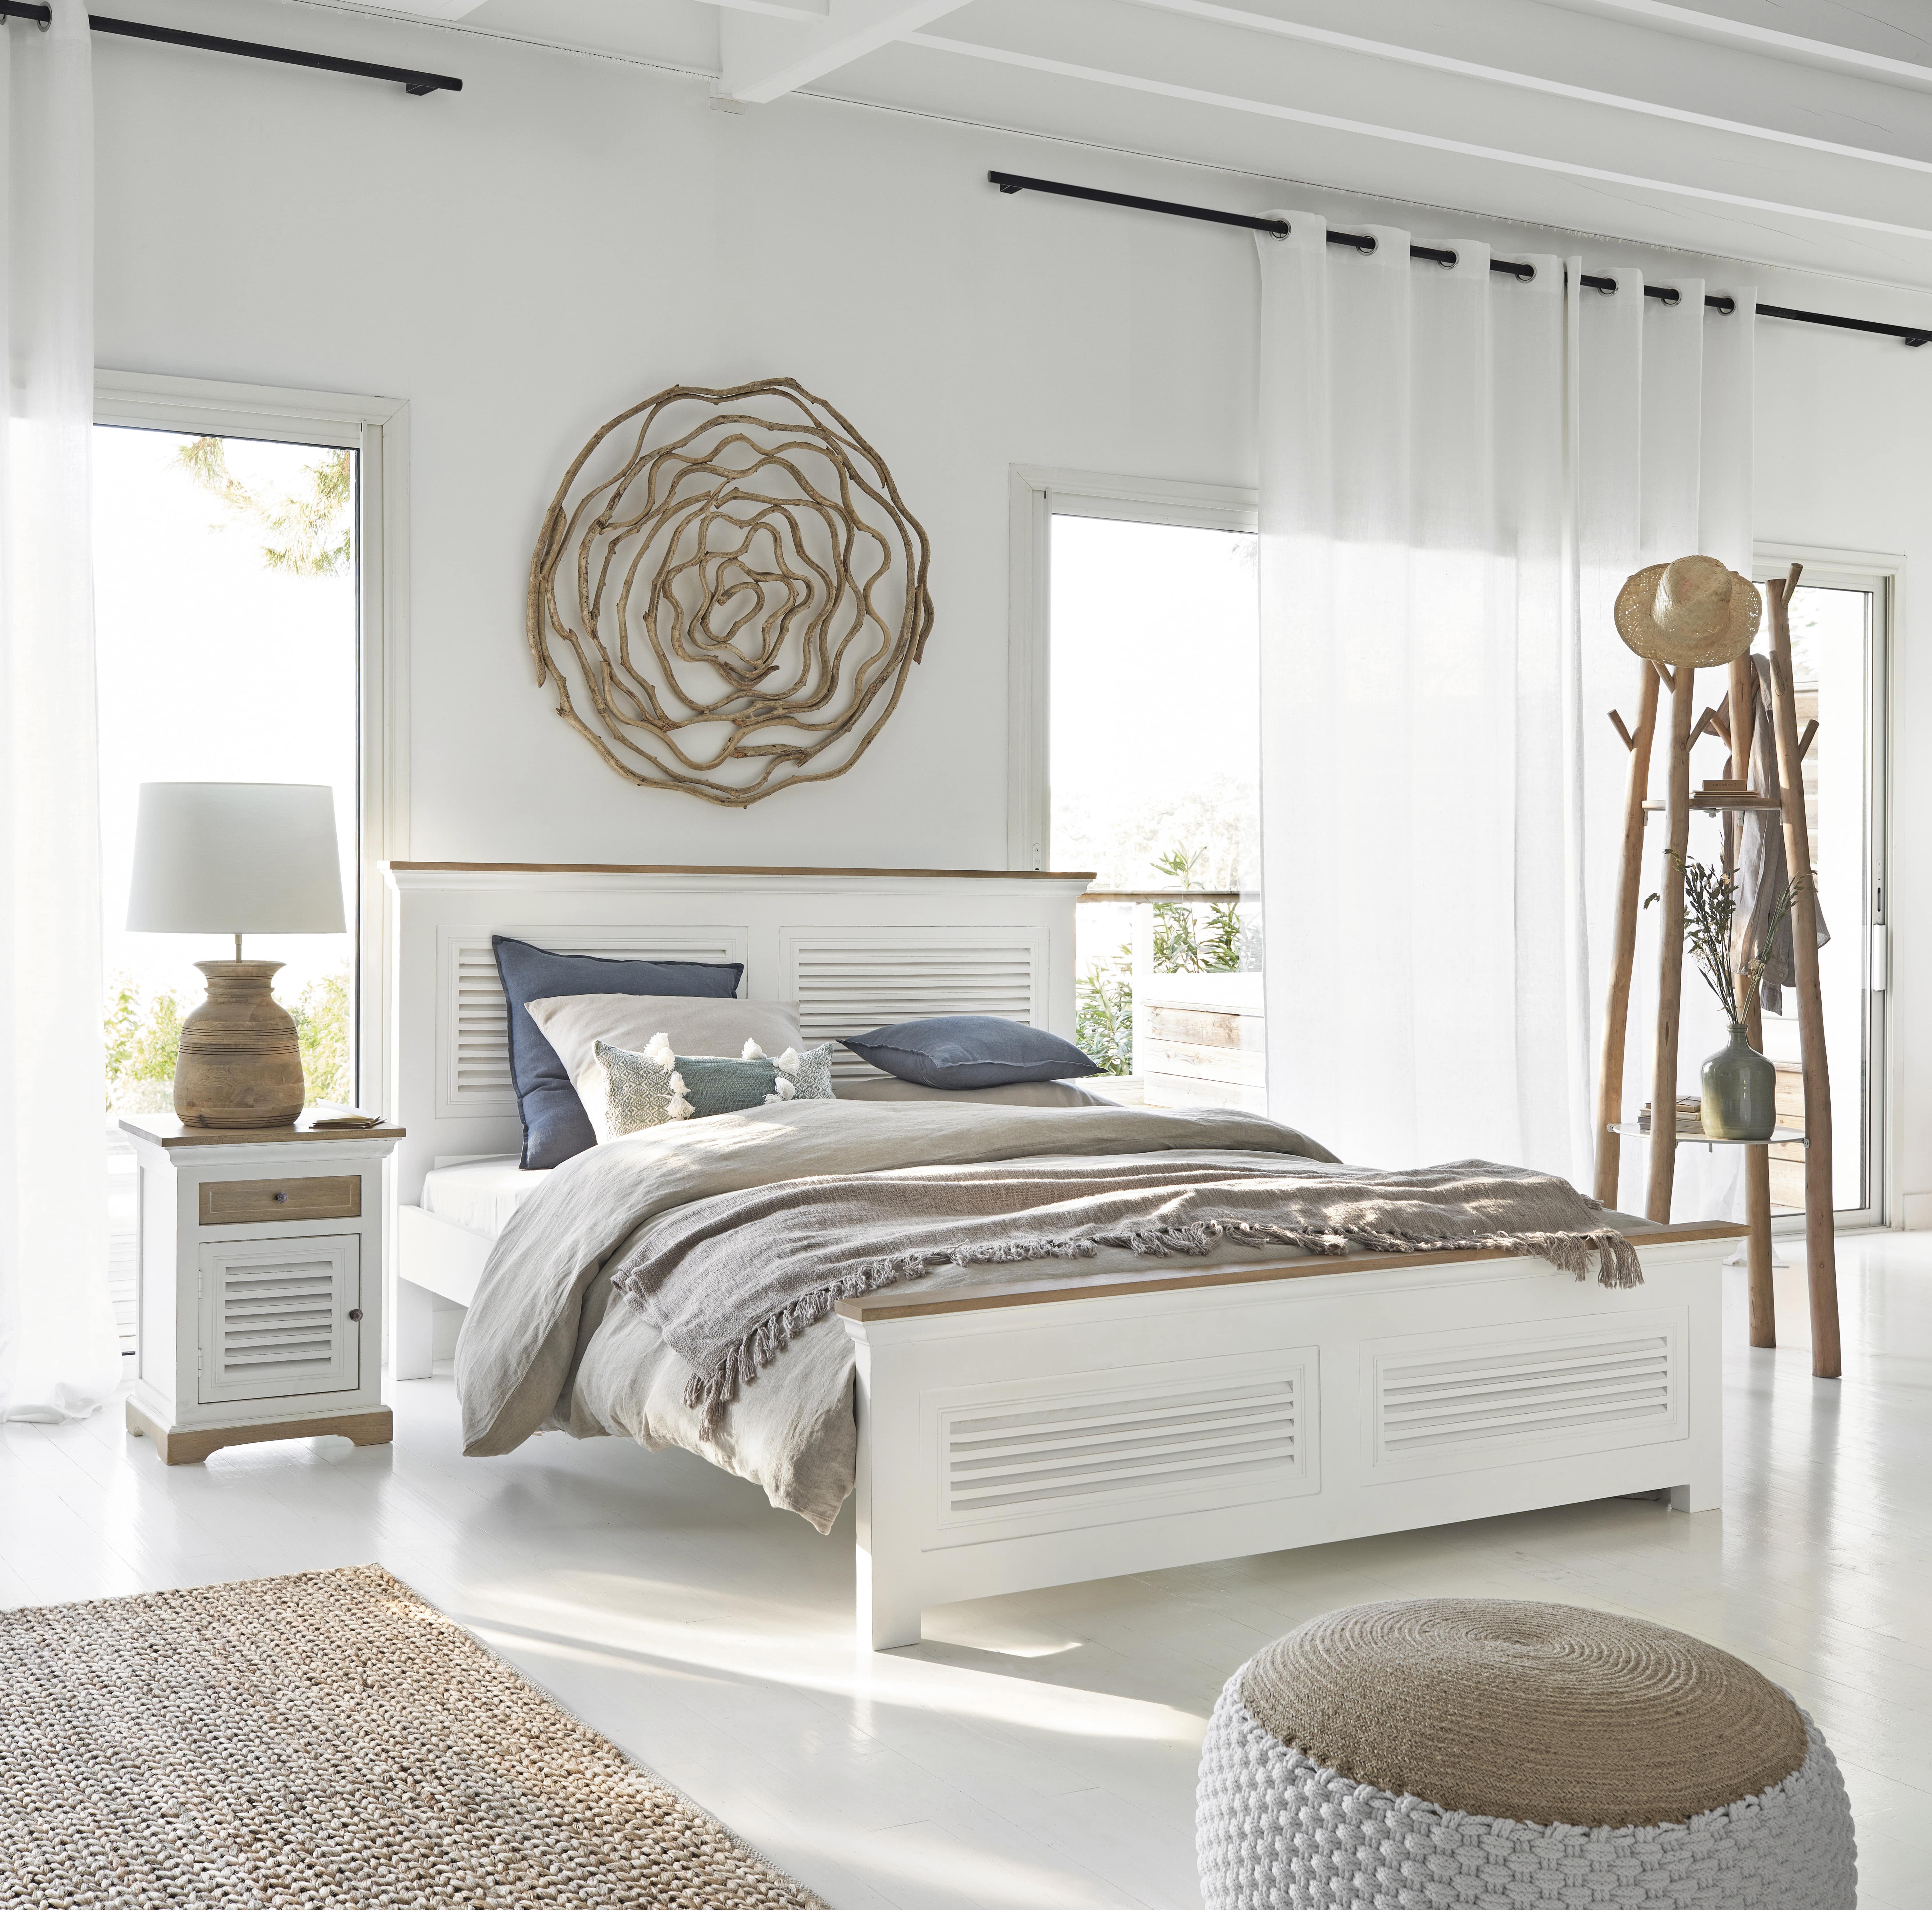 Corteza Pronombre empezar Cómo decorar un dormitorio blanco? | Maisons du Monde